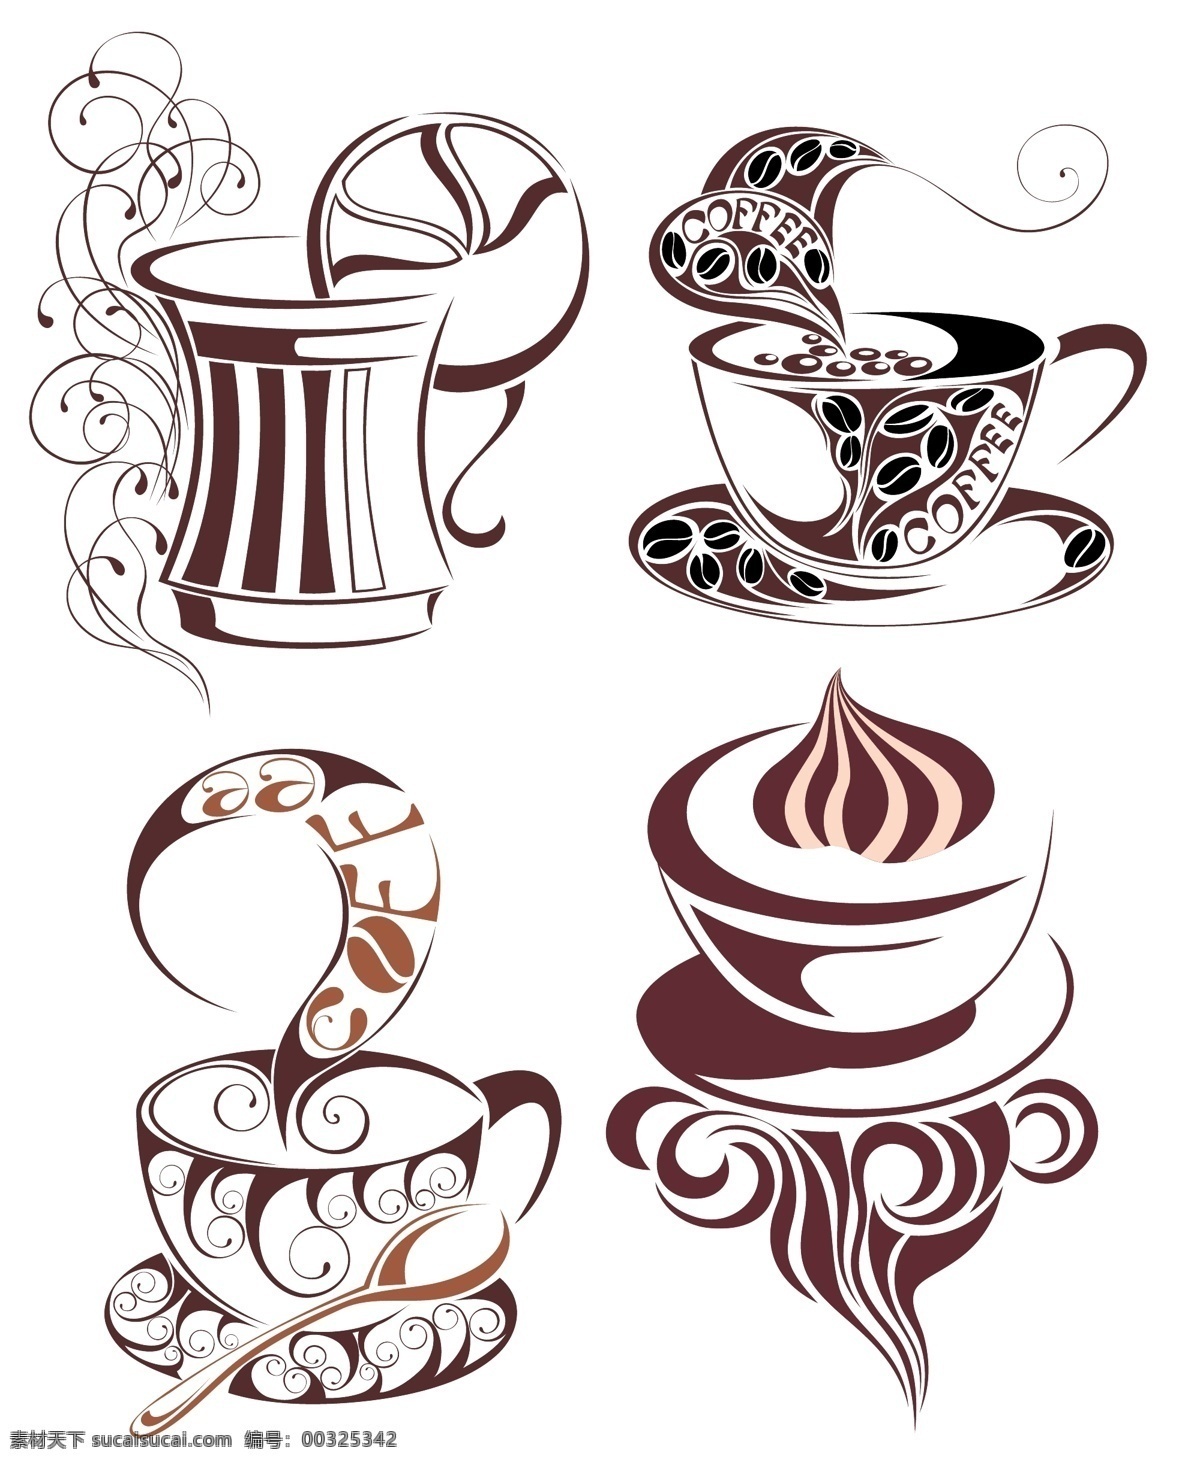 咖啡 主题 矢量 咖啡杯 咖啡豆 咖啡文化 咖啡厅 喝咖啡 一杯咖啡 香味 热气腾腾 线条 花纹 曲线 波浪线 图形 图标 矢量素材 矢量图标 小图标 标识标志图标